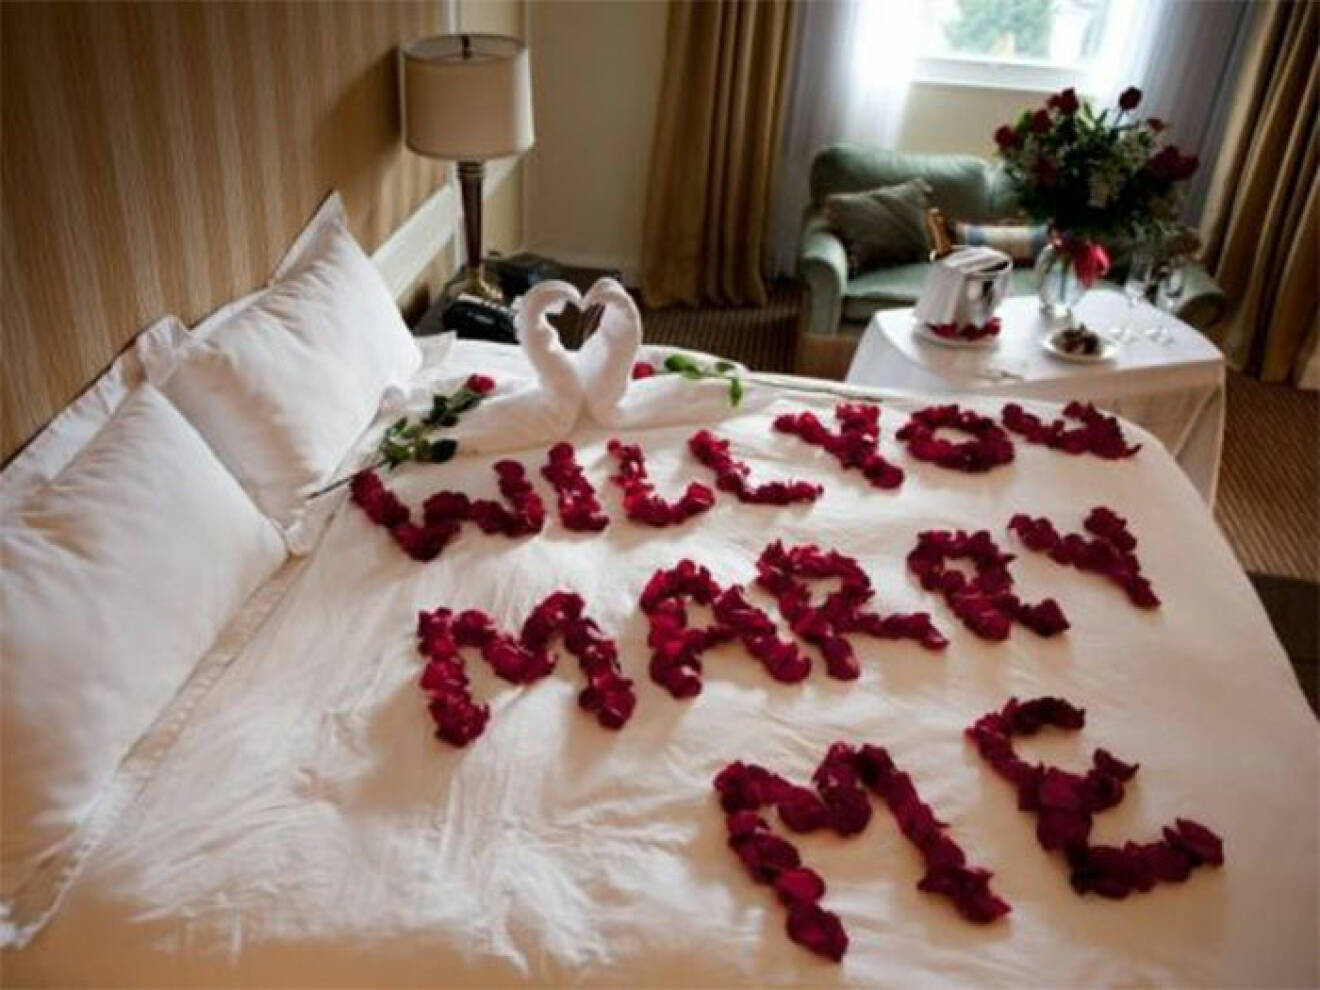 Säng dekorerad med rosblad i texten "Will you marry me?"